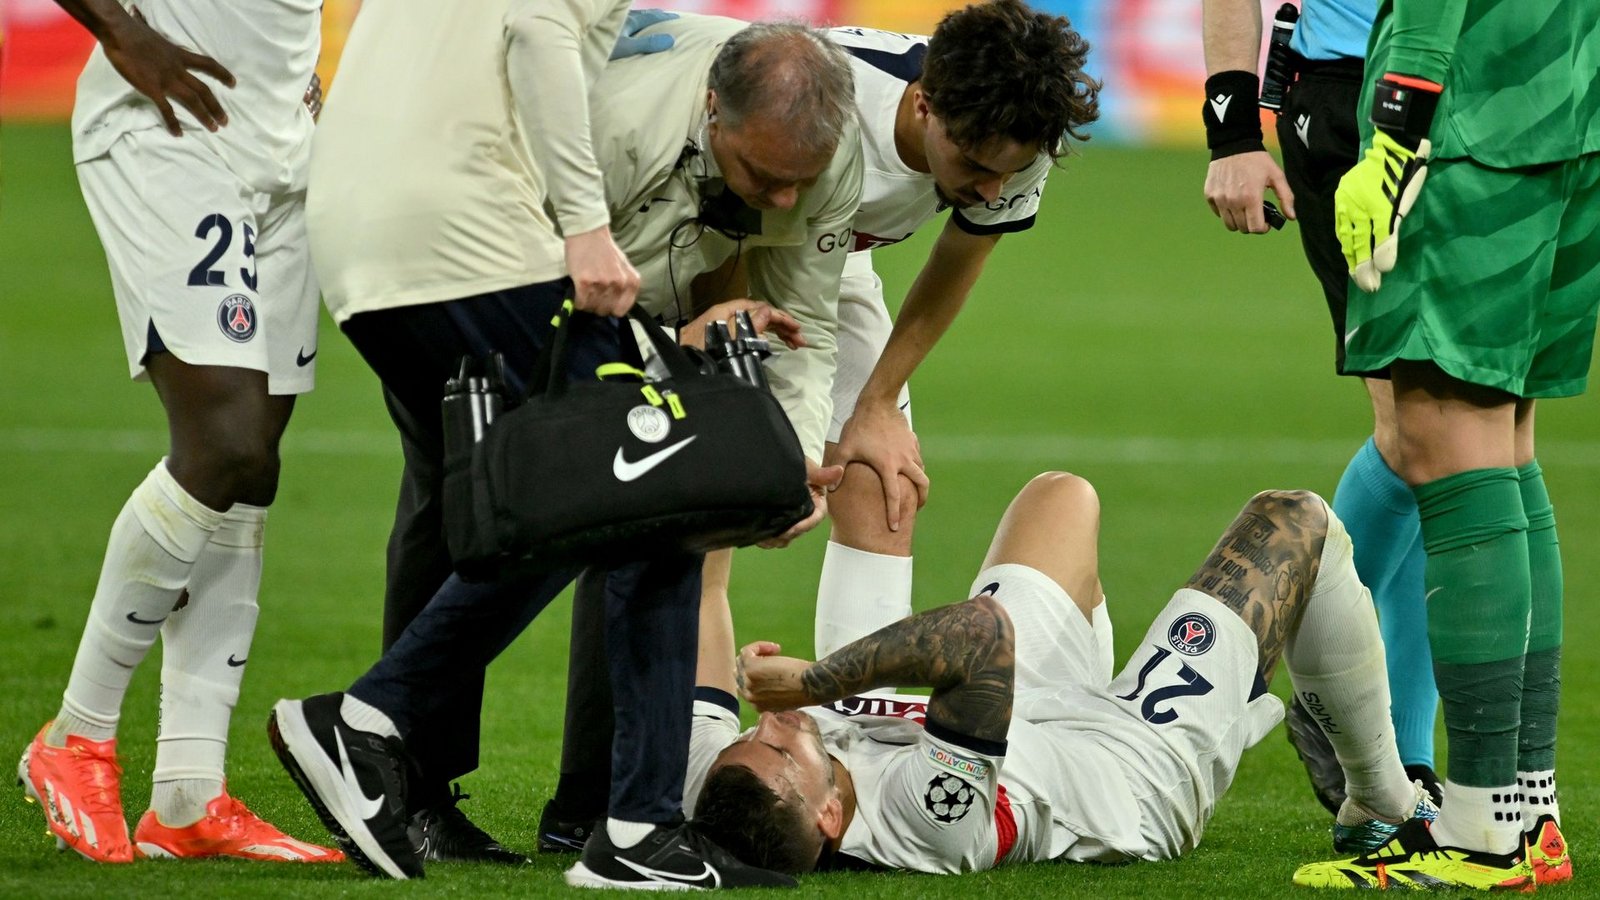 PSG-Verteidiger Lucas Hernandez musste noch vor der Pause verletzt ausgewechselt werden.Foto: Bernd Thissen/dpa